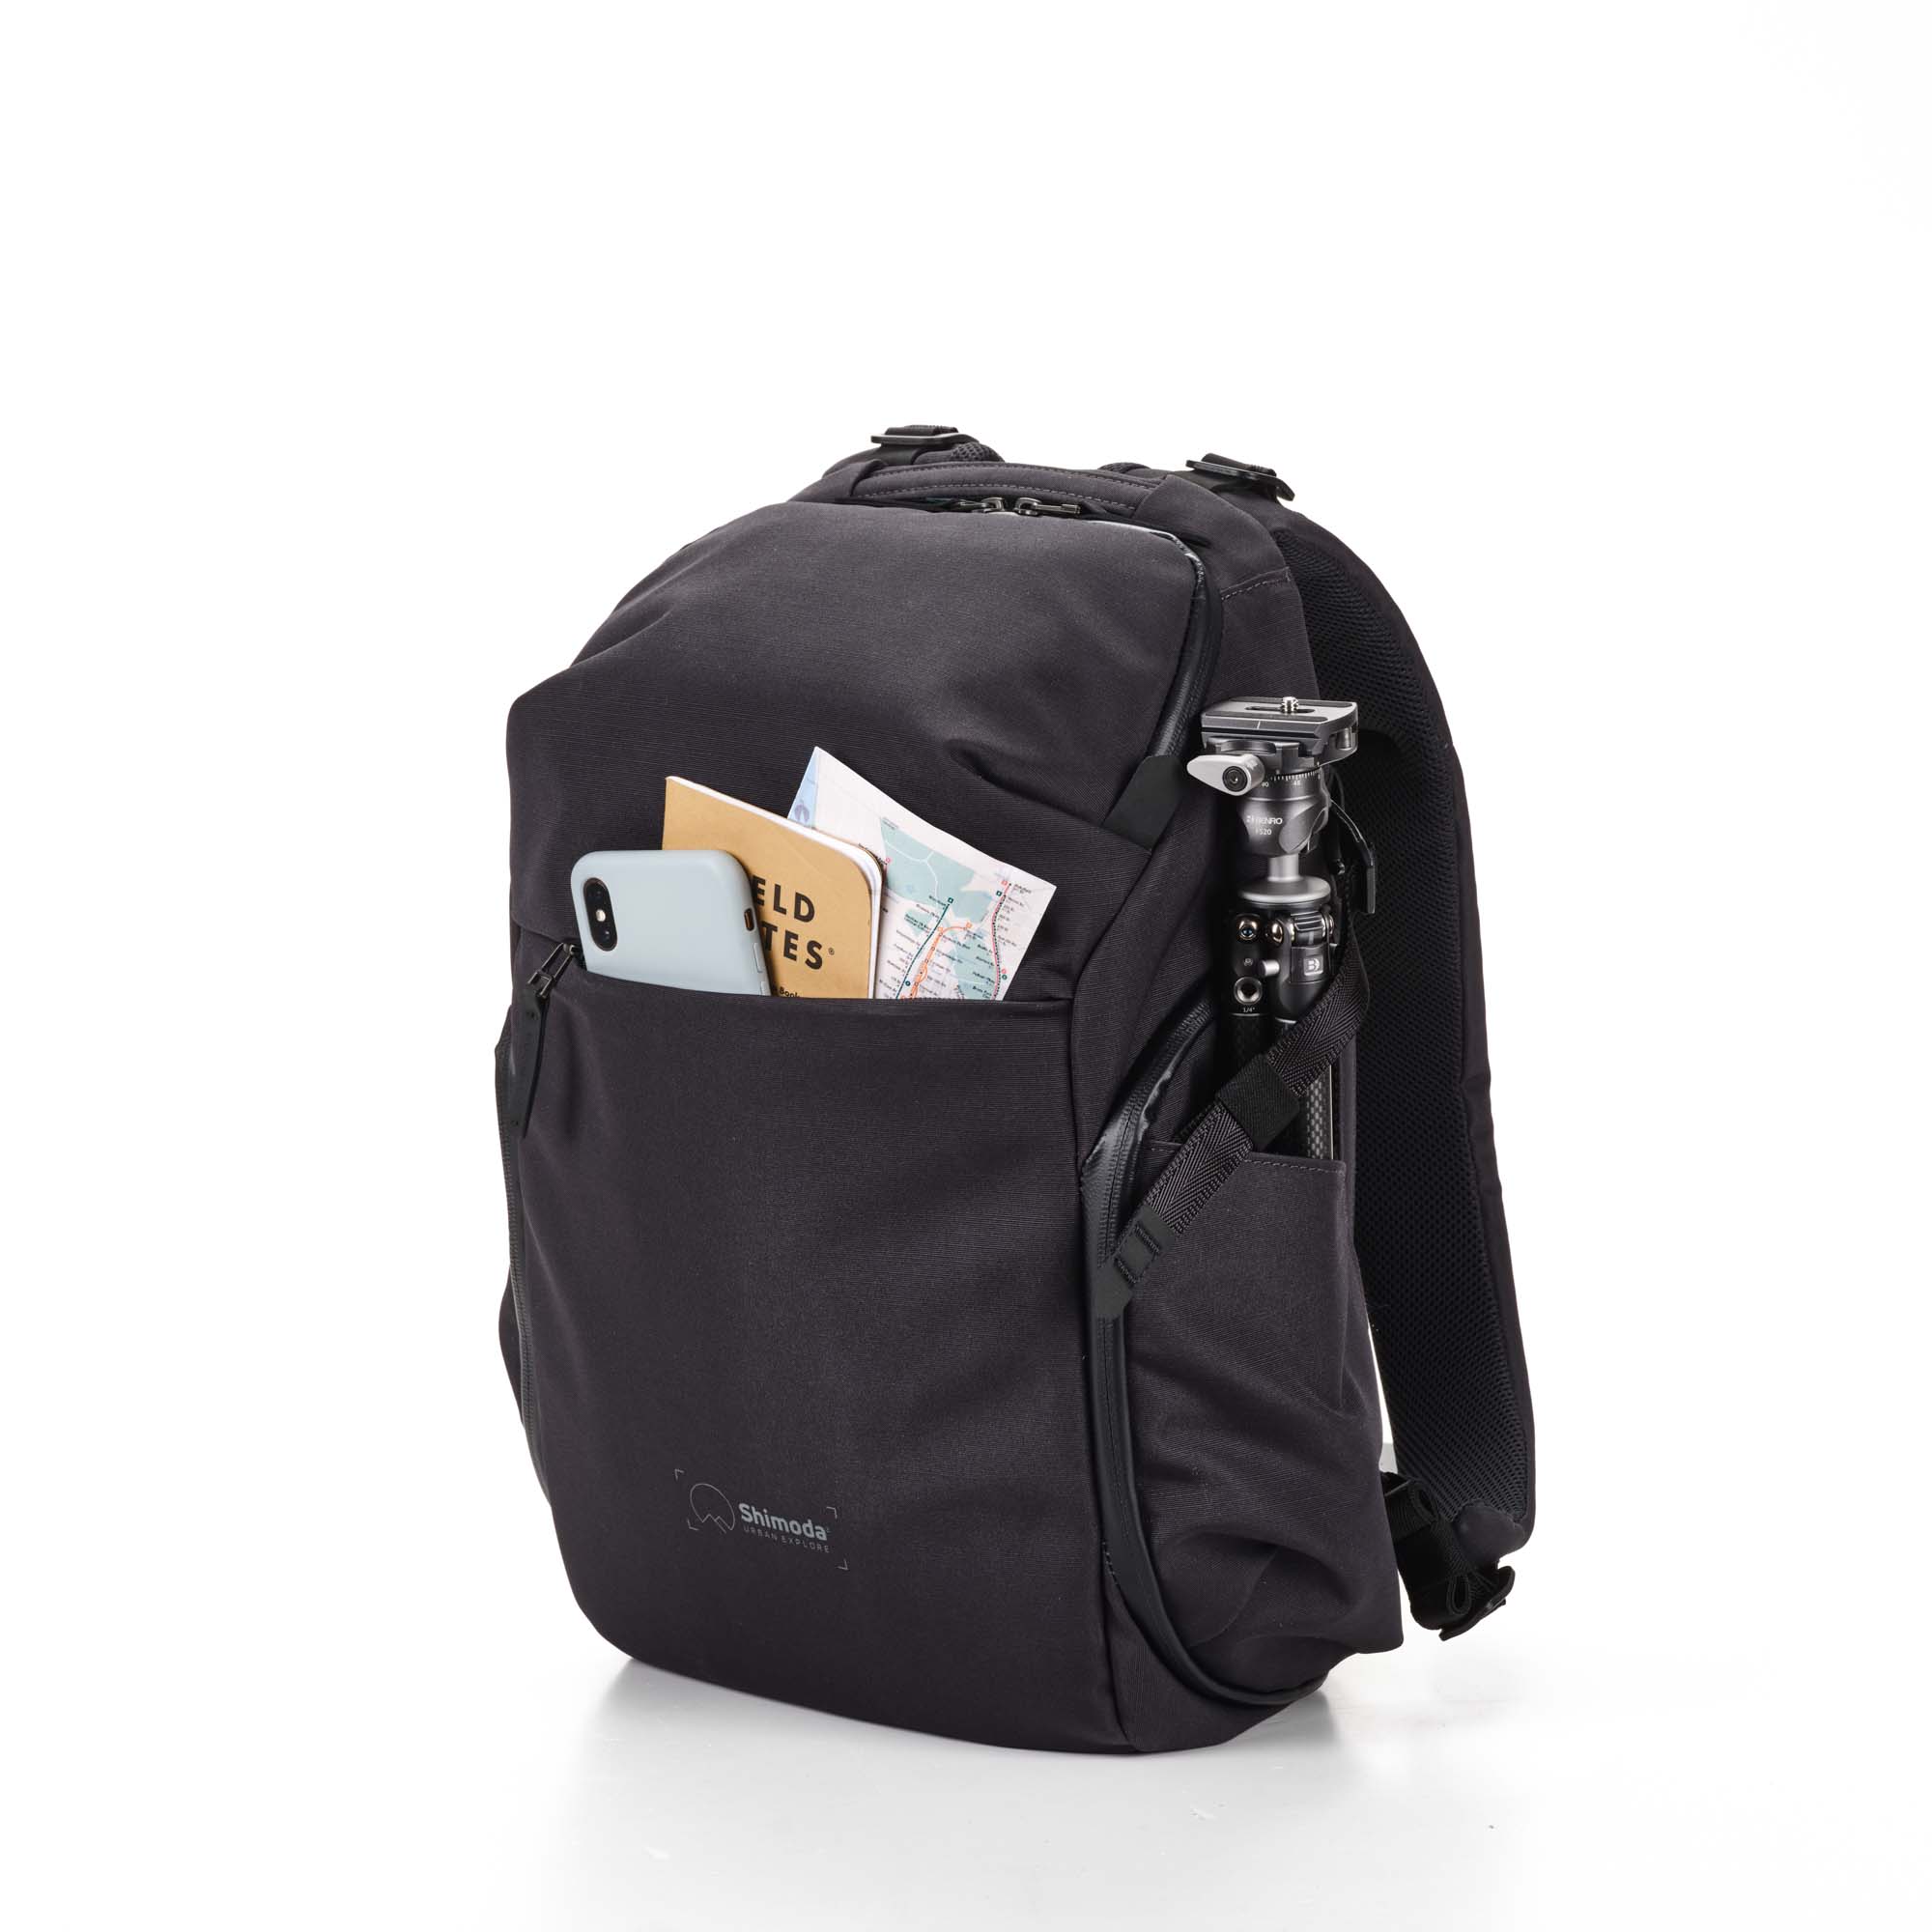 Shimoda Designs Explore 20 Rucksack in Anthrazit, von vorne mit Smartphone, Field Notes und Karte in Fronttasche und Stativ in der Seitentatsche